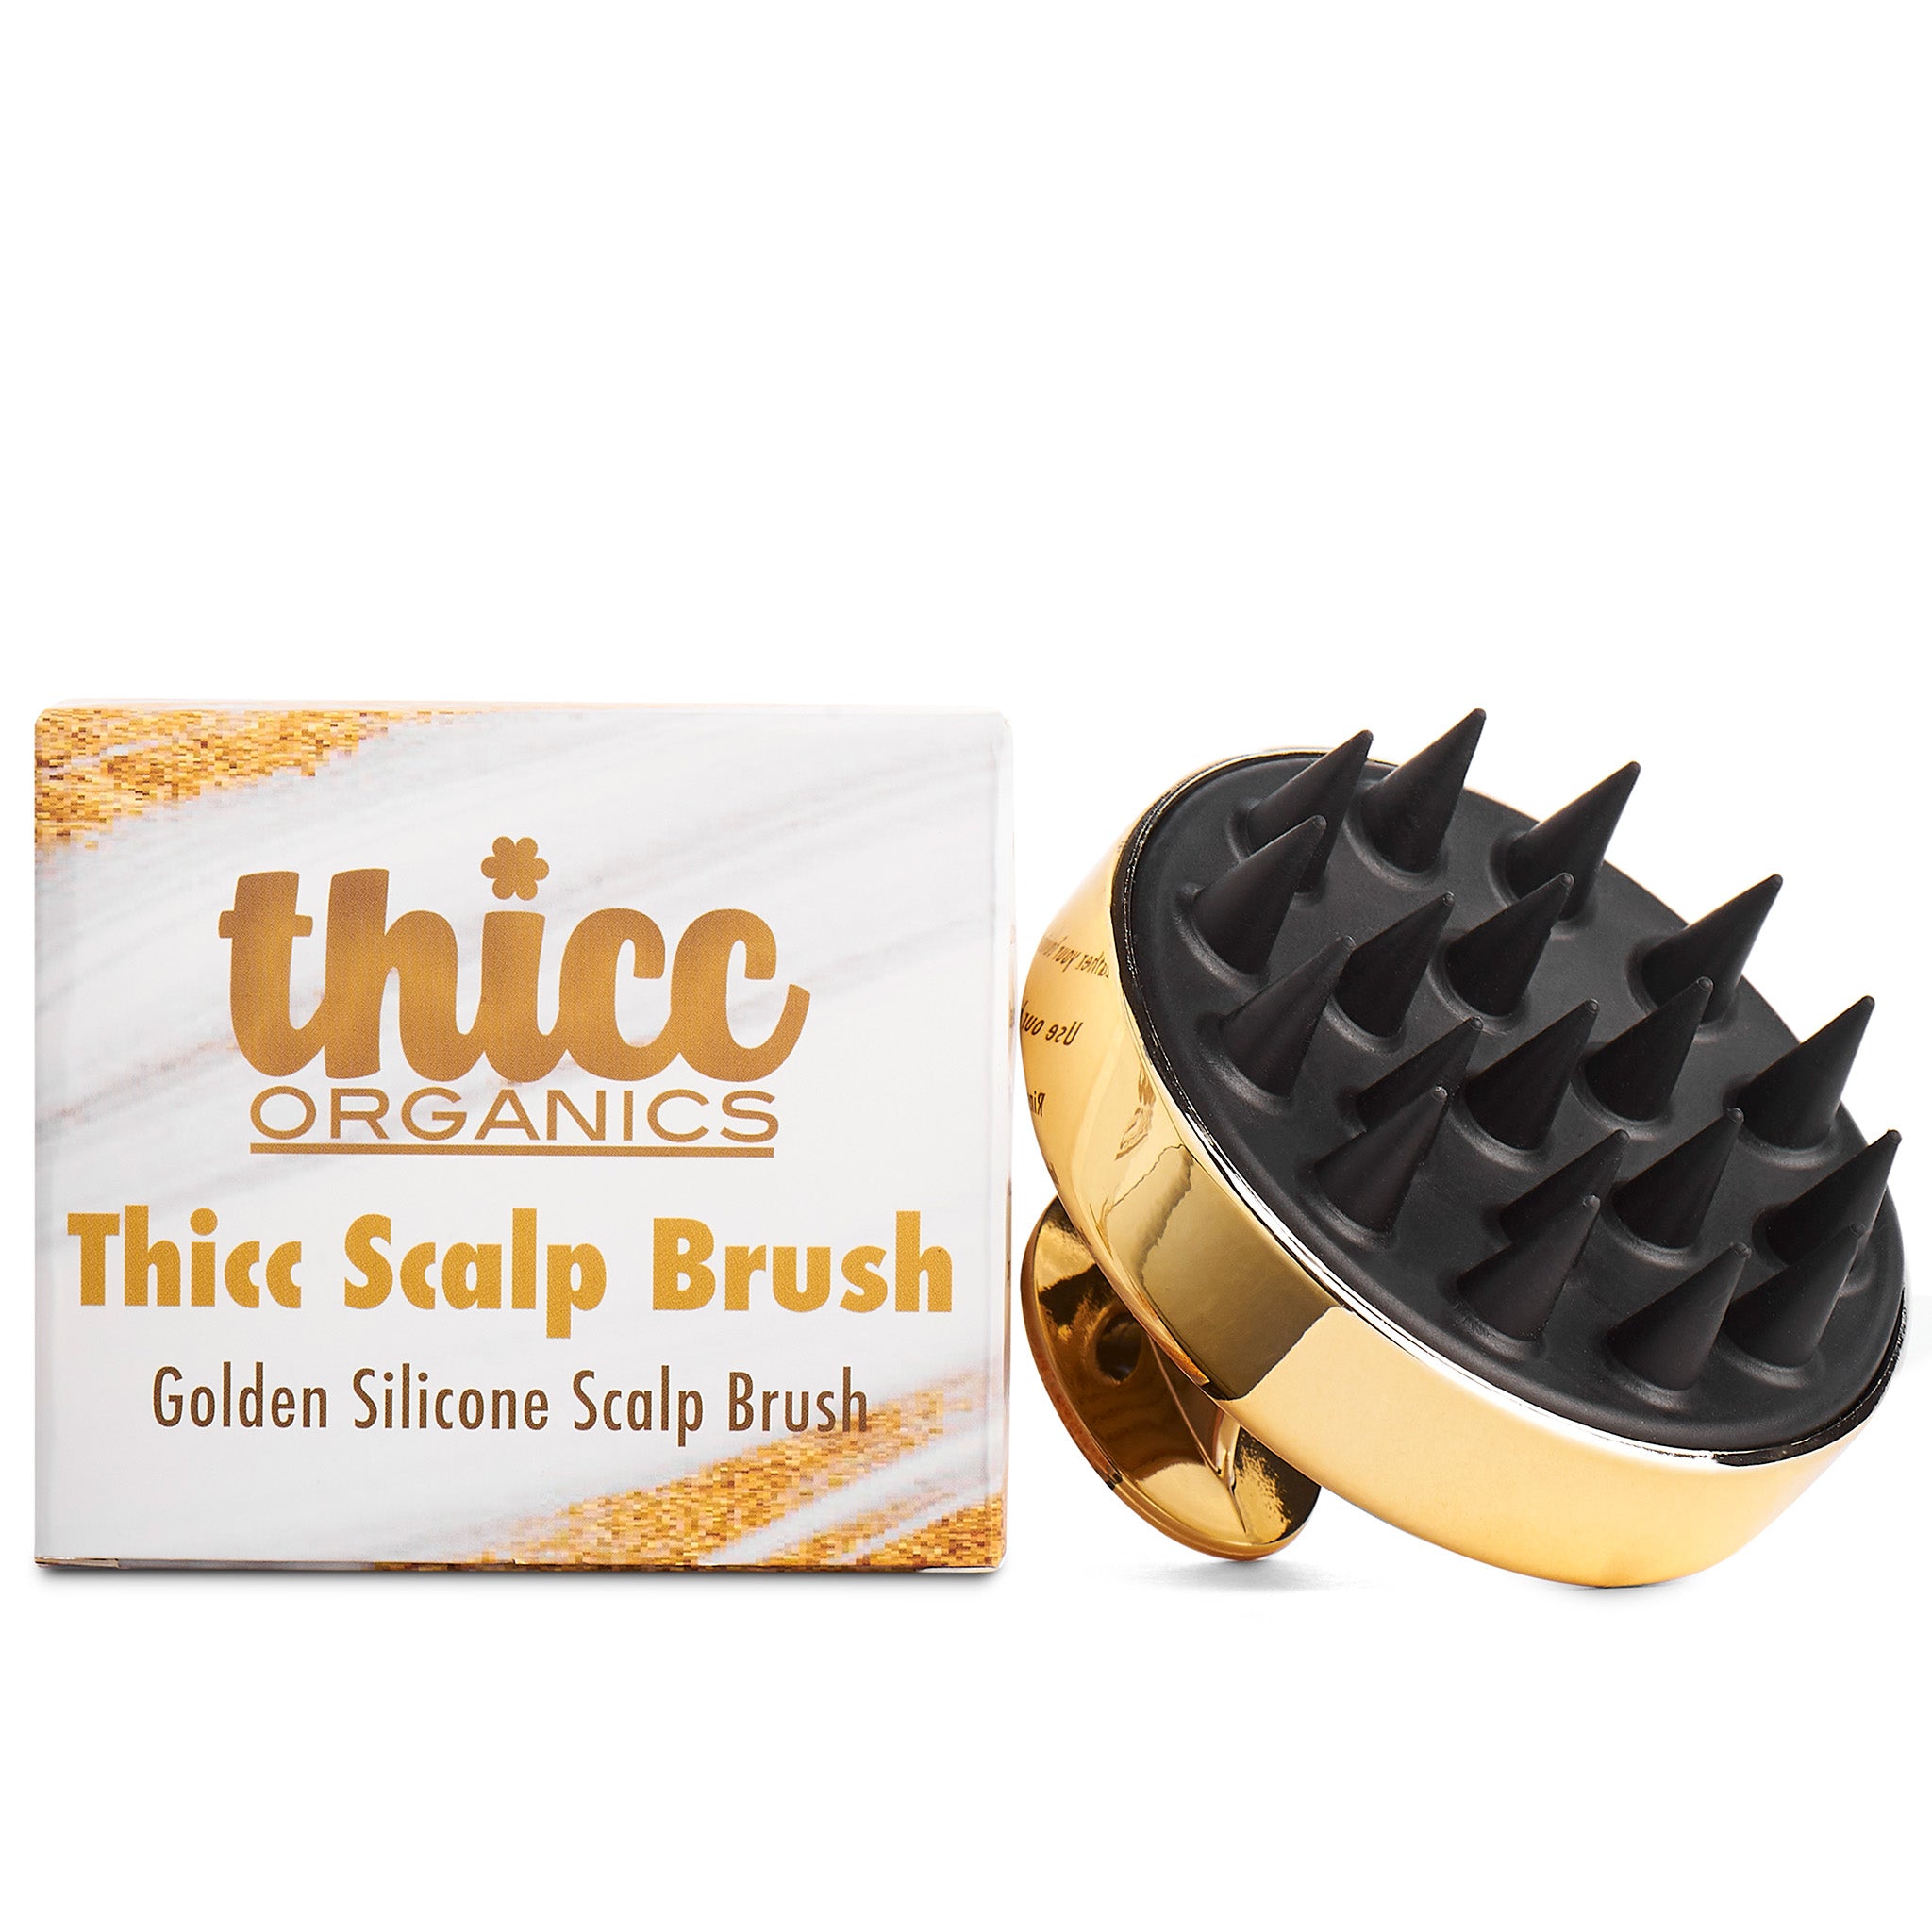 Thicc Scalp Brush - Scalp Massager & Exfoliating Shampoo Brush